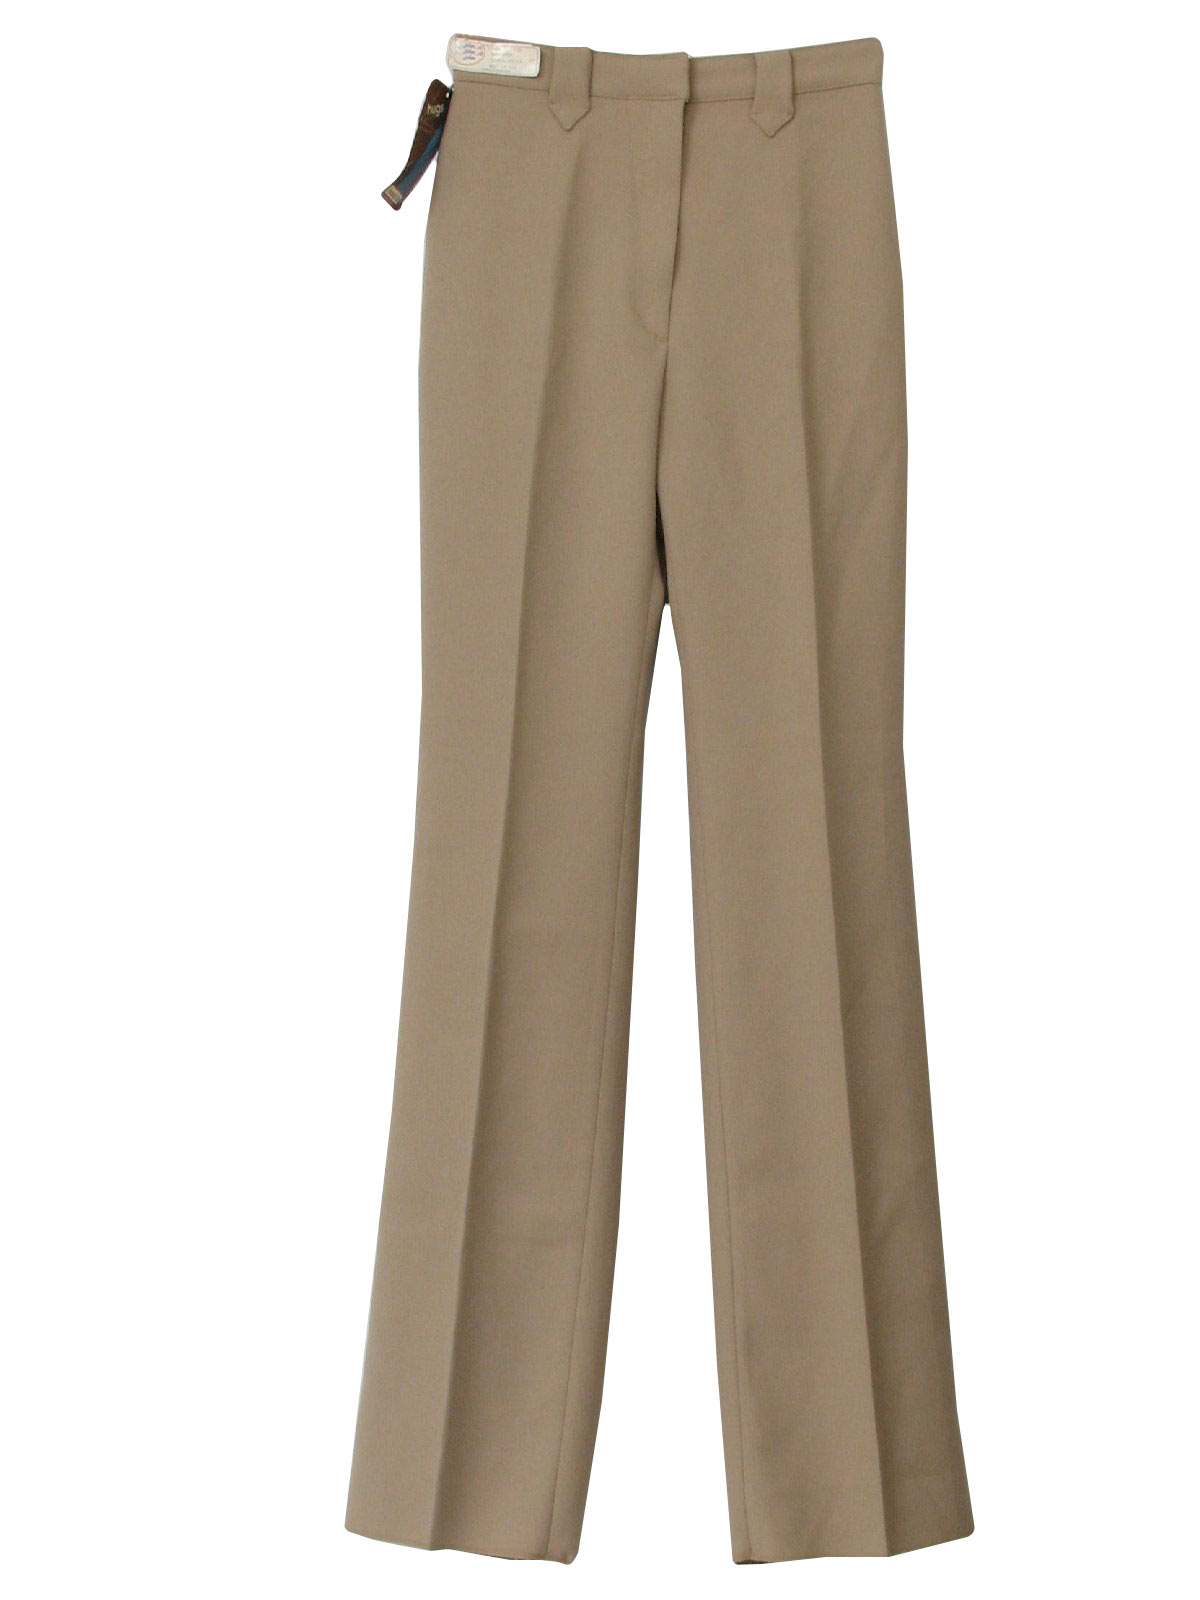 Seventies Vintage Pants: 70s -Panhandle Slim- Womens creamy tan ...